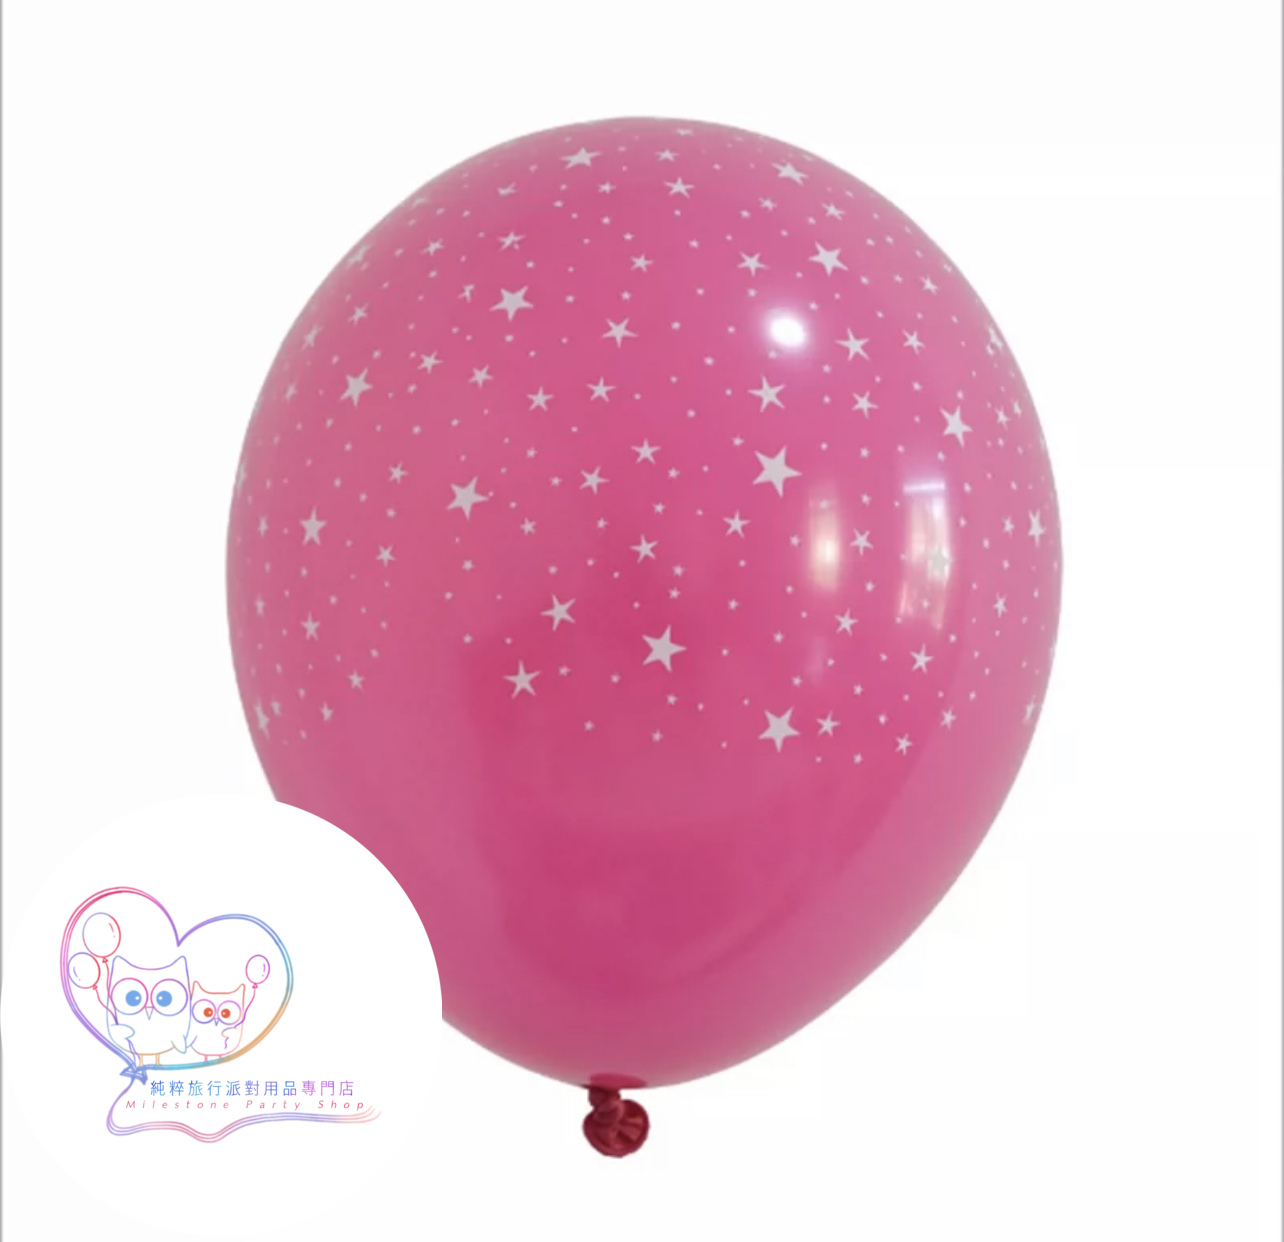 10吋滿天星氣球 (桃紅色) (1pc) LBP4-2